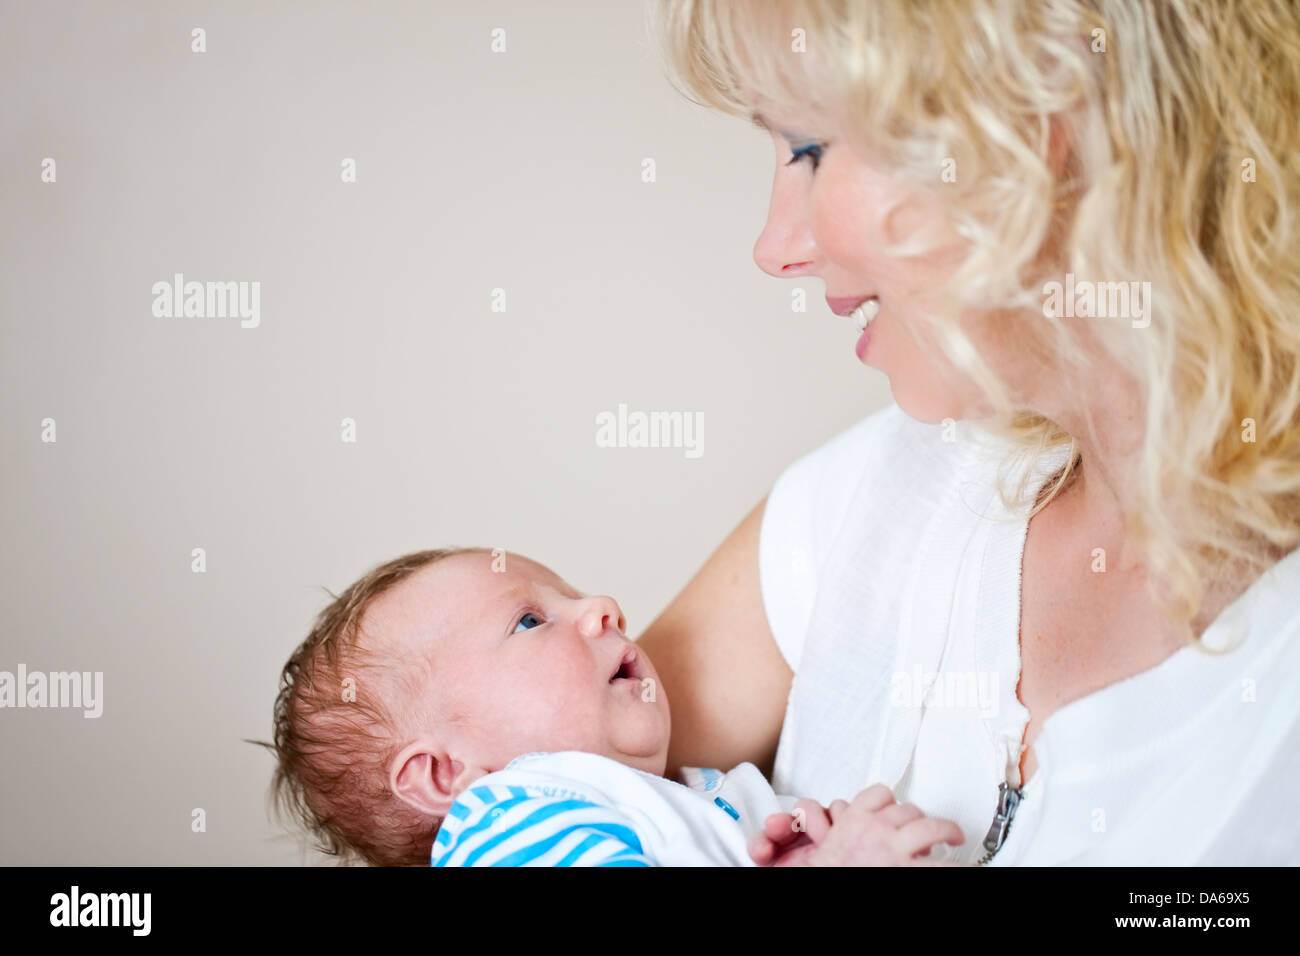 Junge Frau mit einem Neugeborenen baby Stockfoto